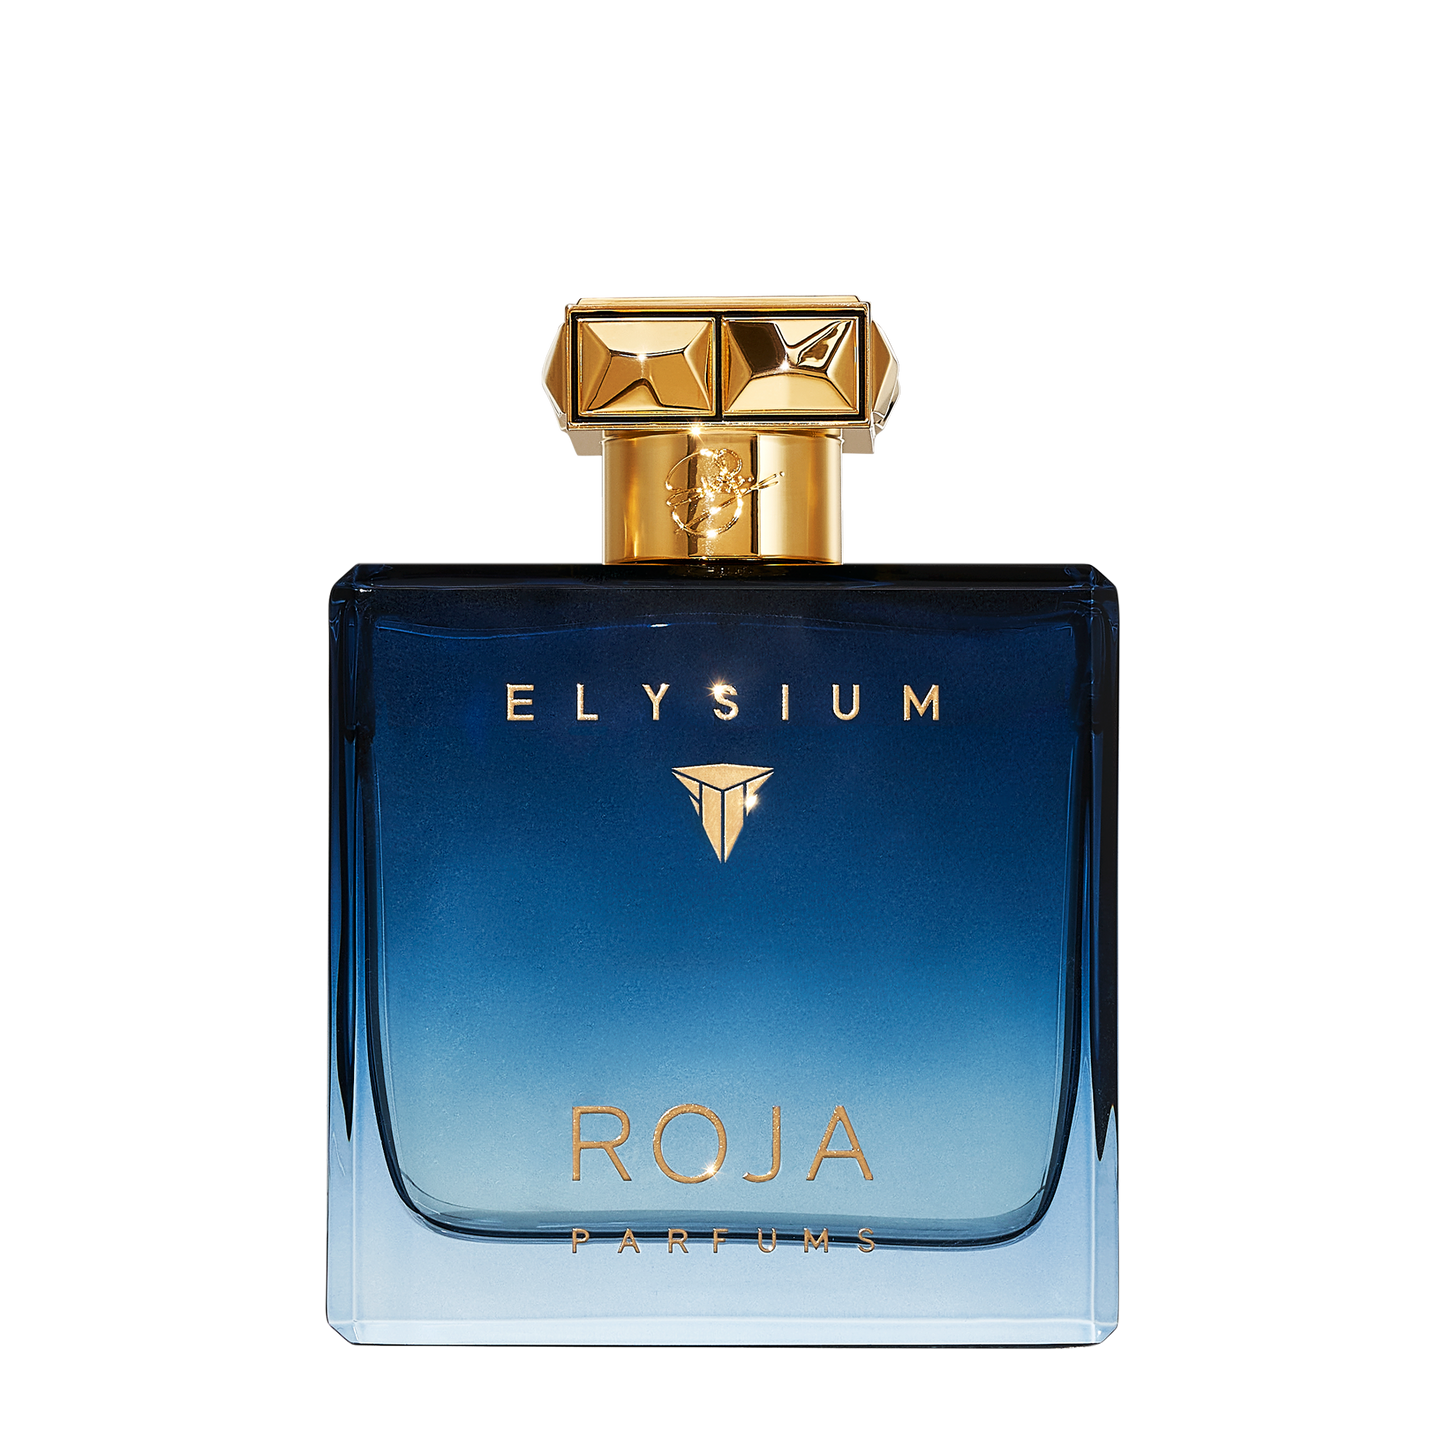 Elysium Pour Homme (Parfum Cologne)